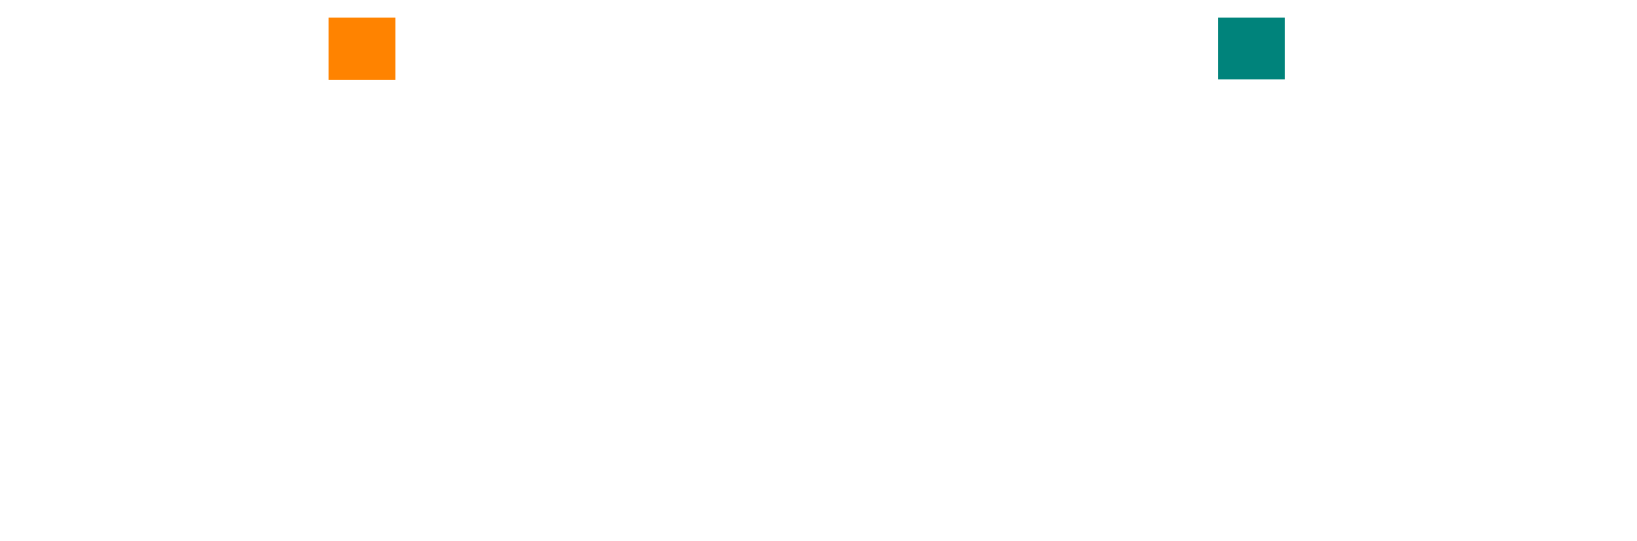 Kidpik logo grand pour les fonds sombres (PNG transparent)